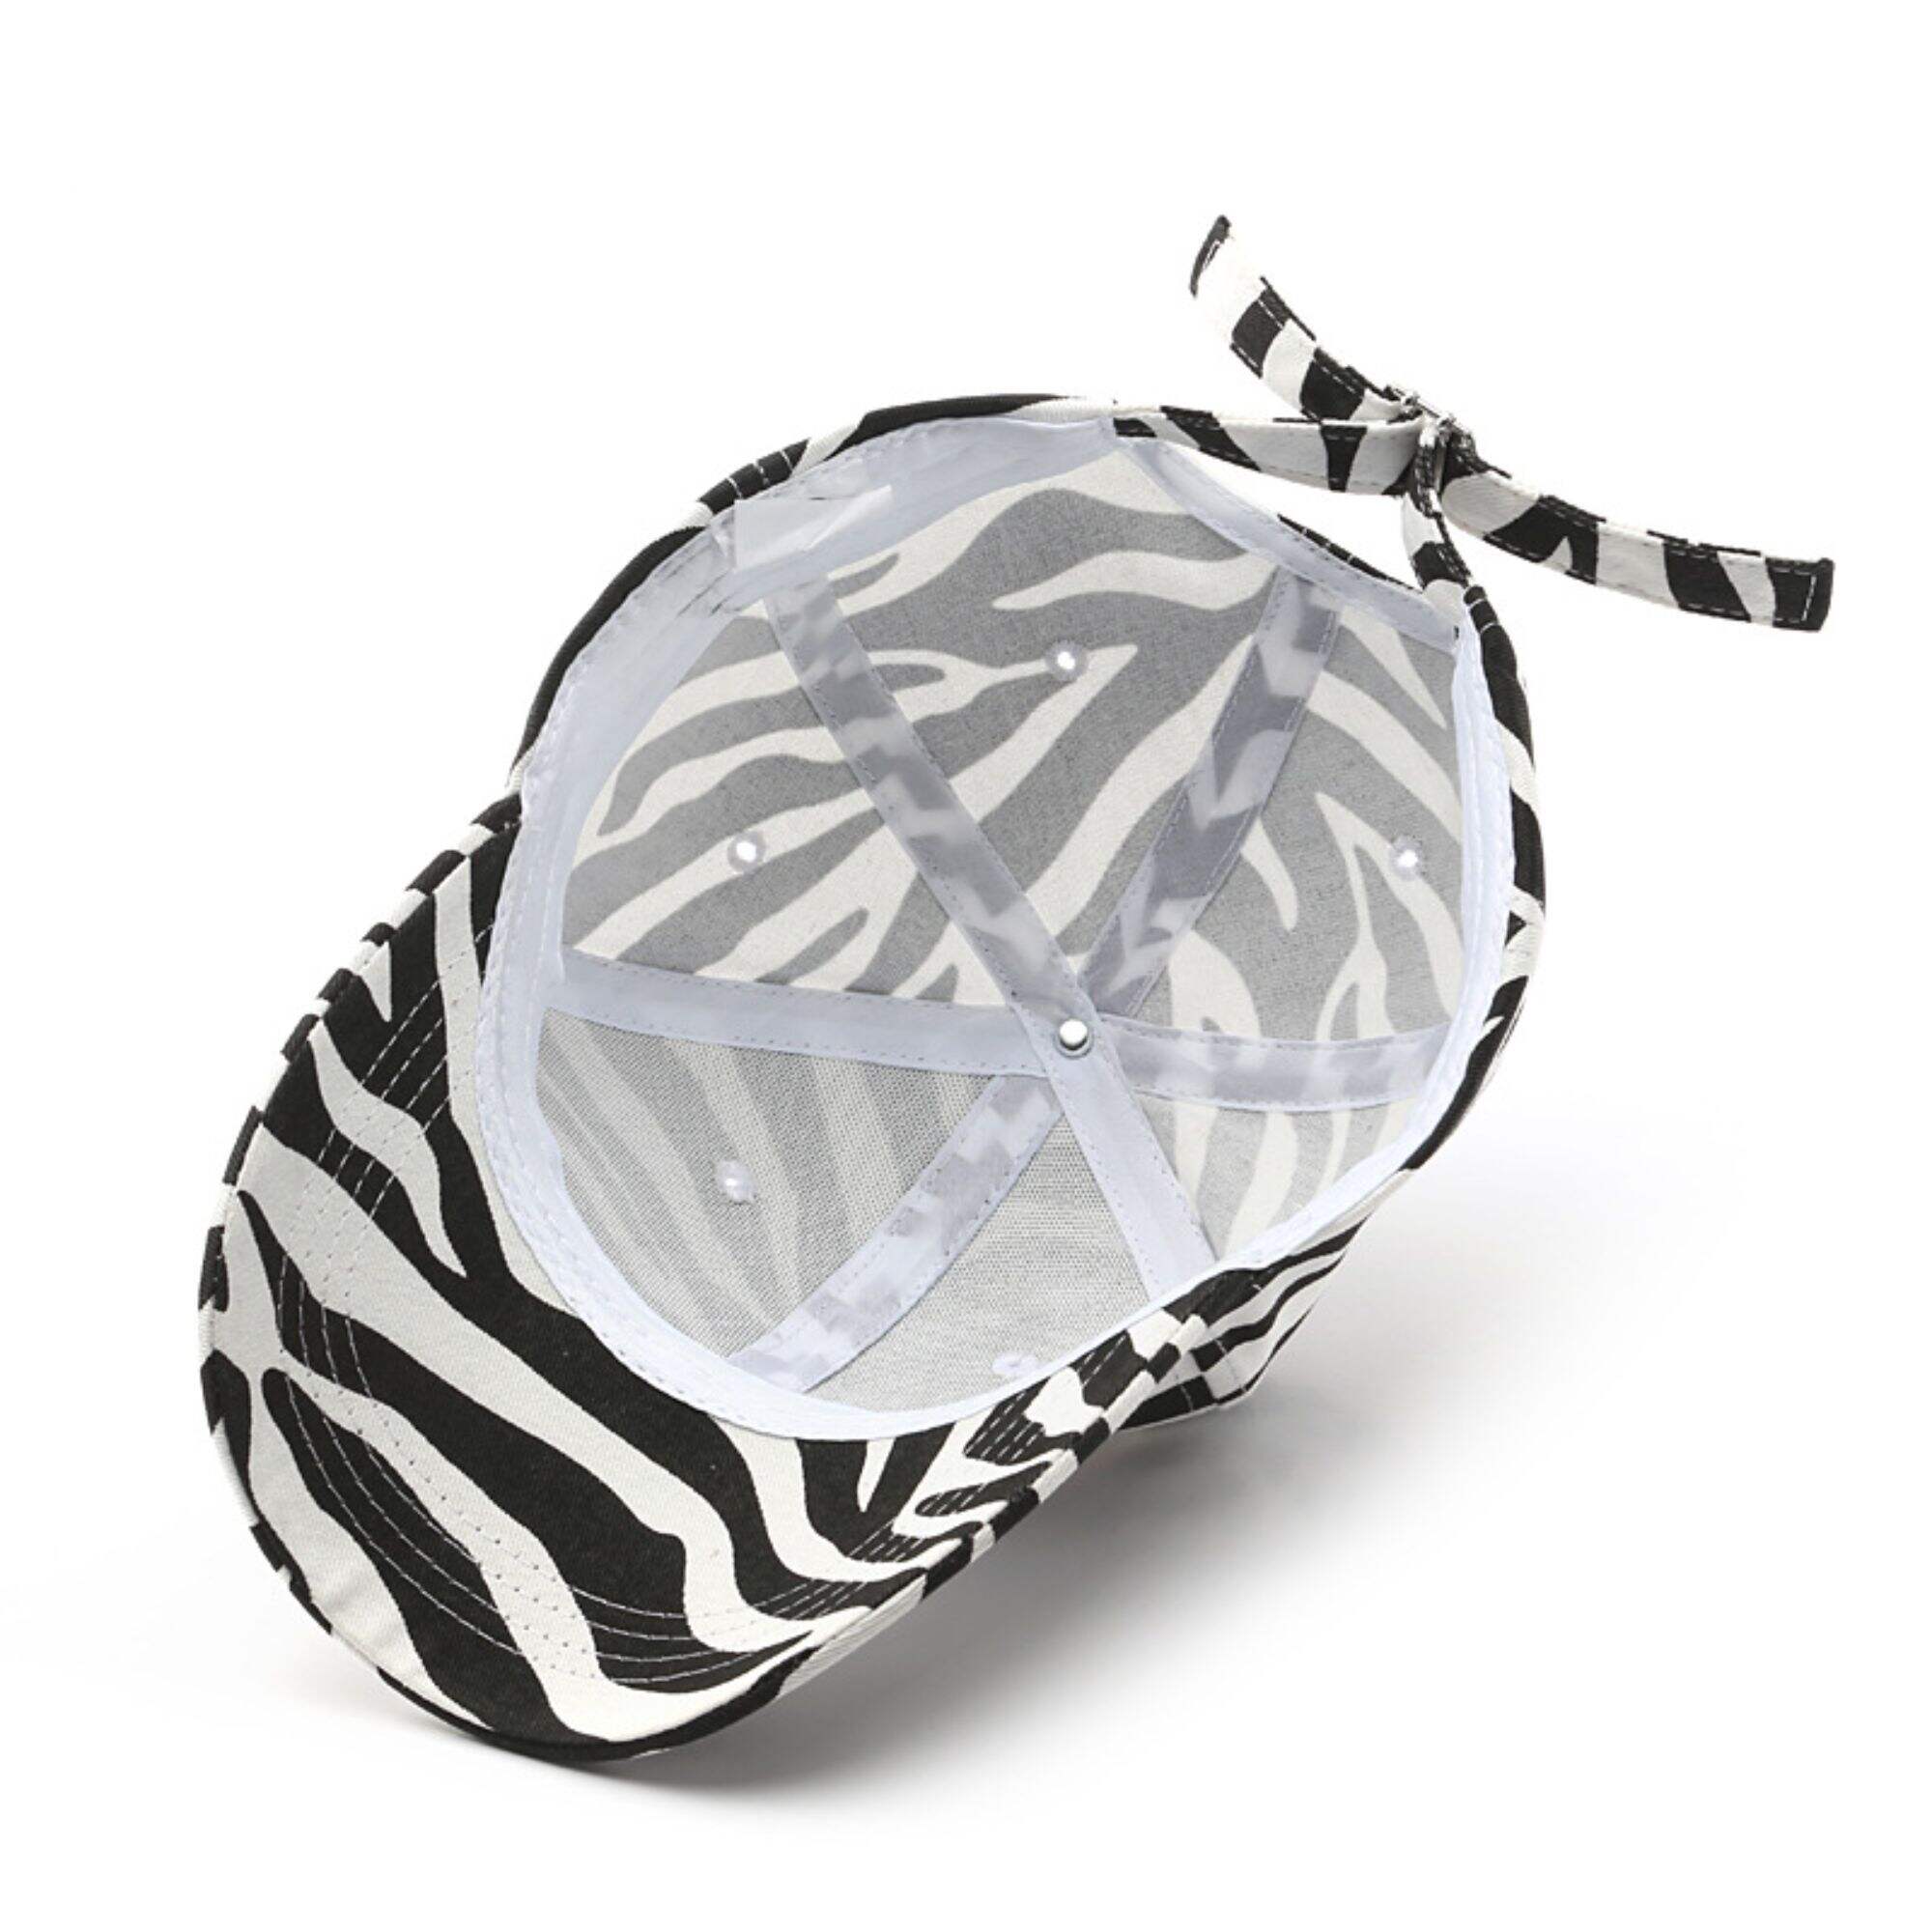 Zebra print baseball cap